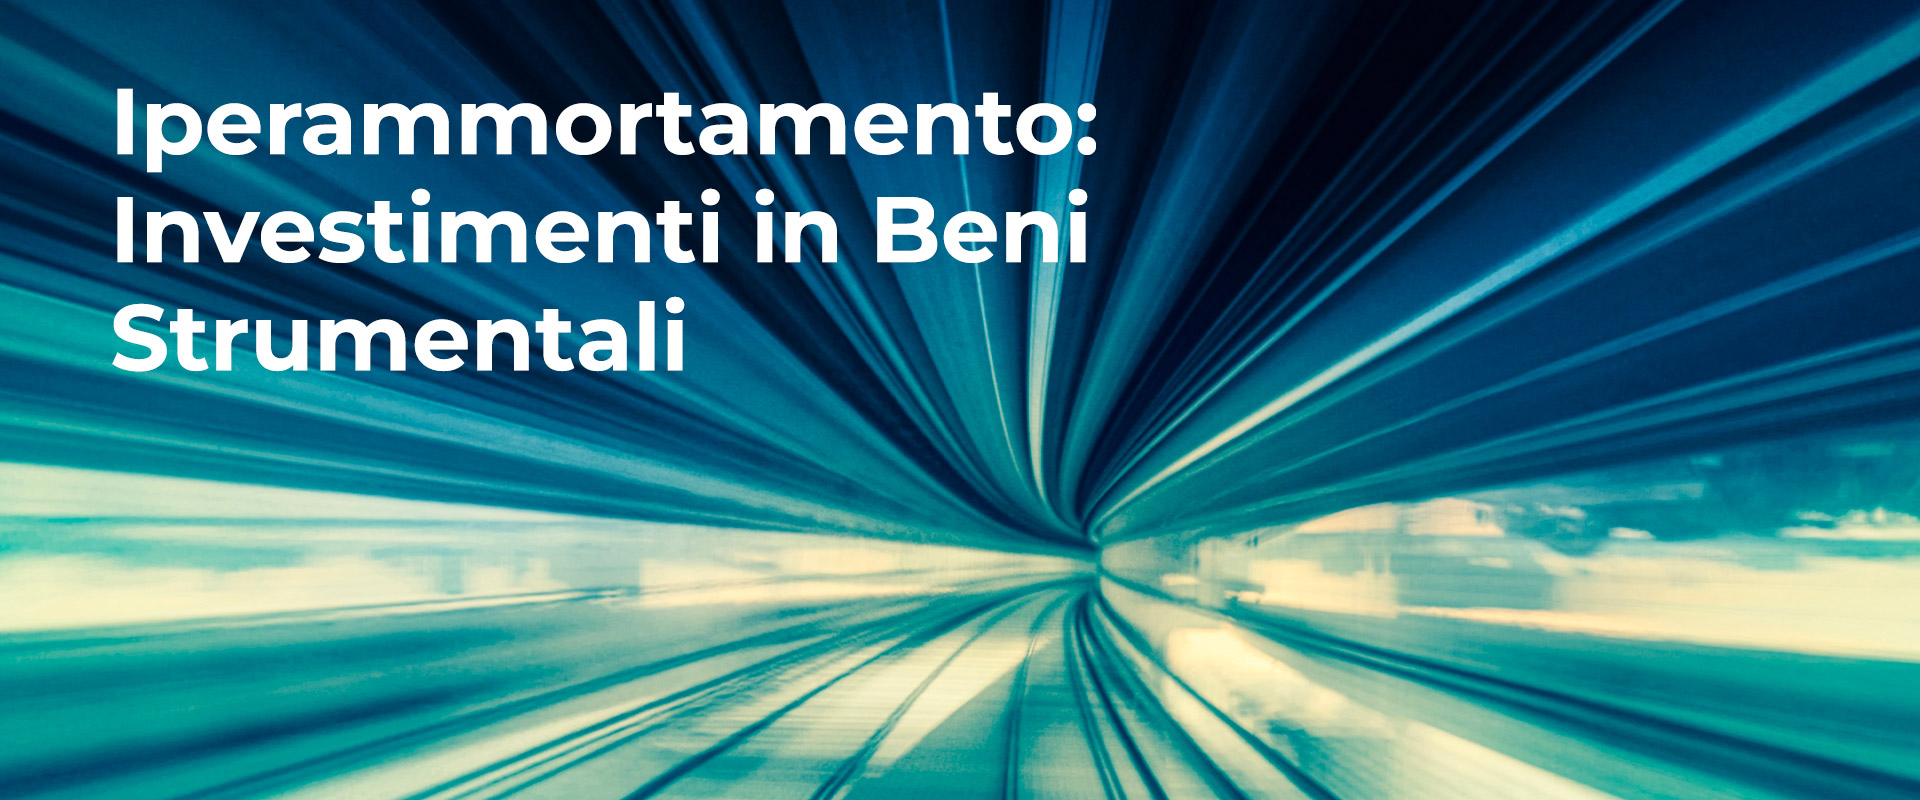 Iperammortamento: Investimenti in Beni Strumentali